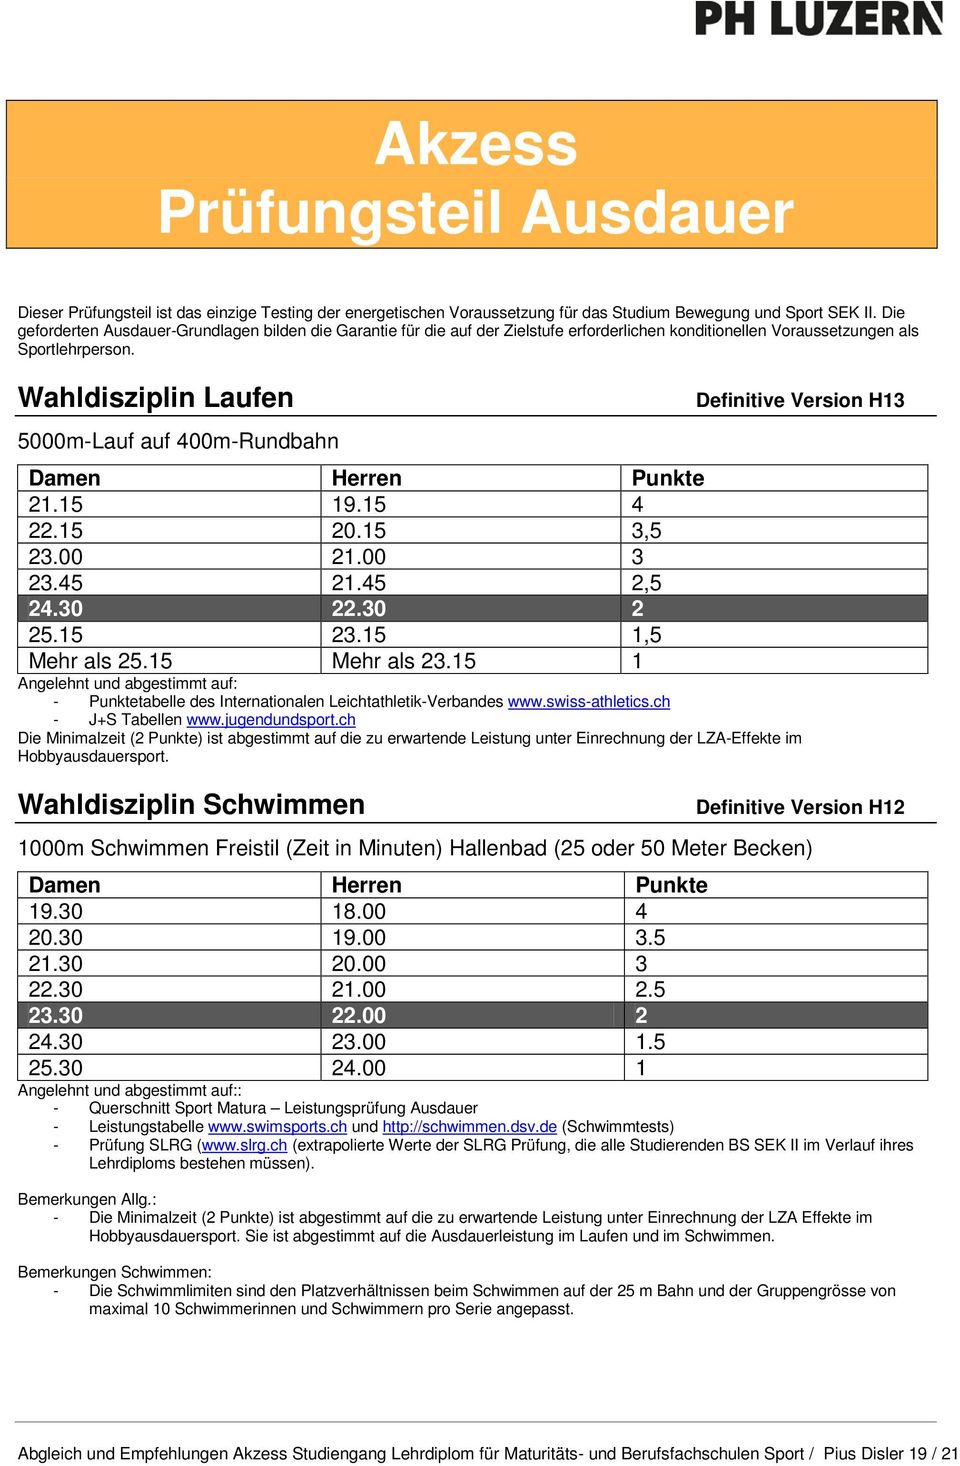 Wahldisziplin Laufen 5000m-Lauf auf 400m-Rundbahn Definitive Version H13 Damen Herren Punkte 21.15 19.15 4 22.15 20.15 3,5 23.00 21.00 3 23.45 21.45 2,5 24.30 22.30 2 25.15 23.15 1,5 Mehr als 25.